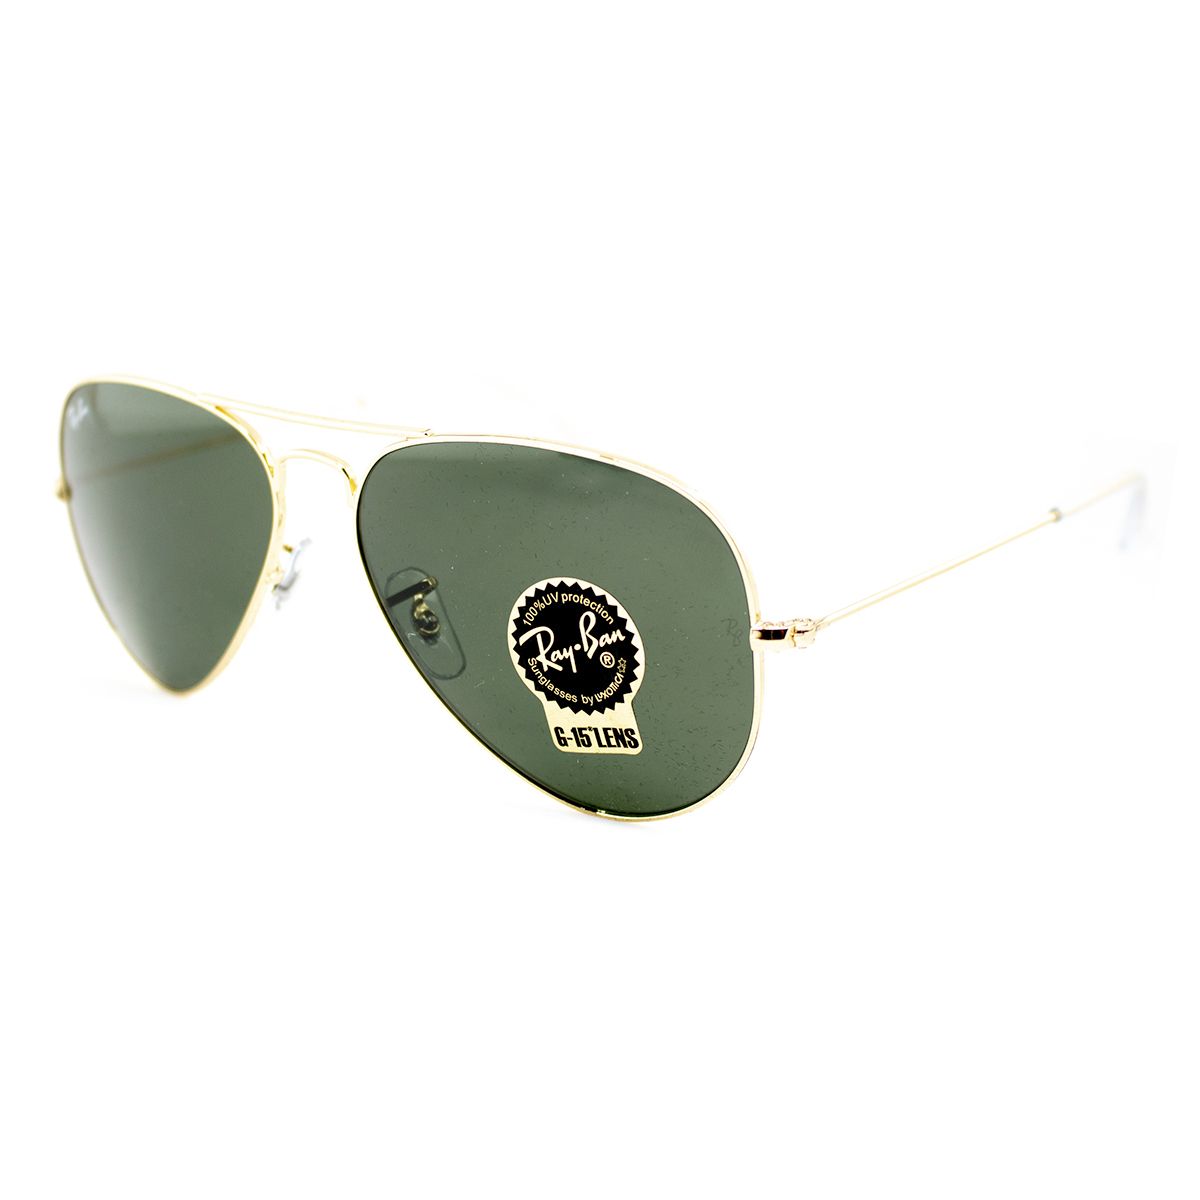 RB3025 Pilot Sunglasses L0205 00 - size 58